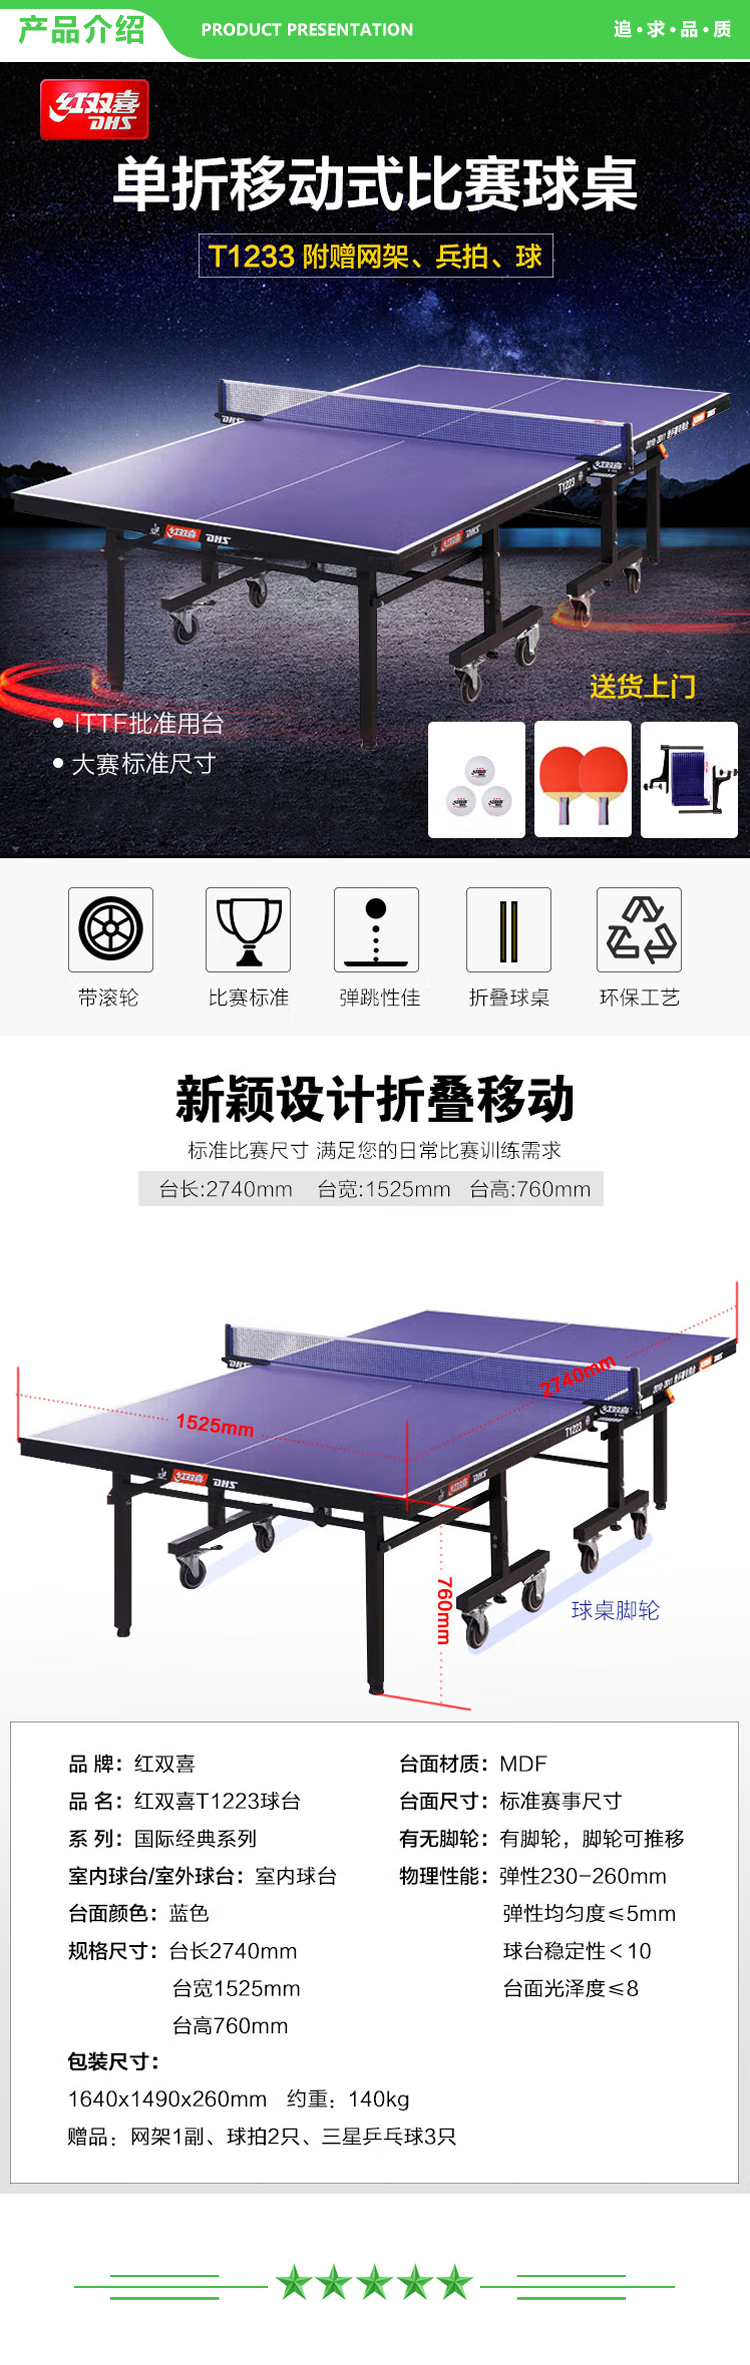 红双喜 DHS T1223 乒乓球台折叠移动式专业比赛乒乓球桌(含高档网架、乒乓拍、乒乓球)  (2).jpg